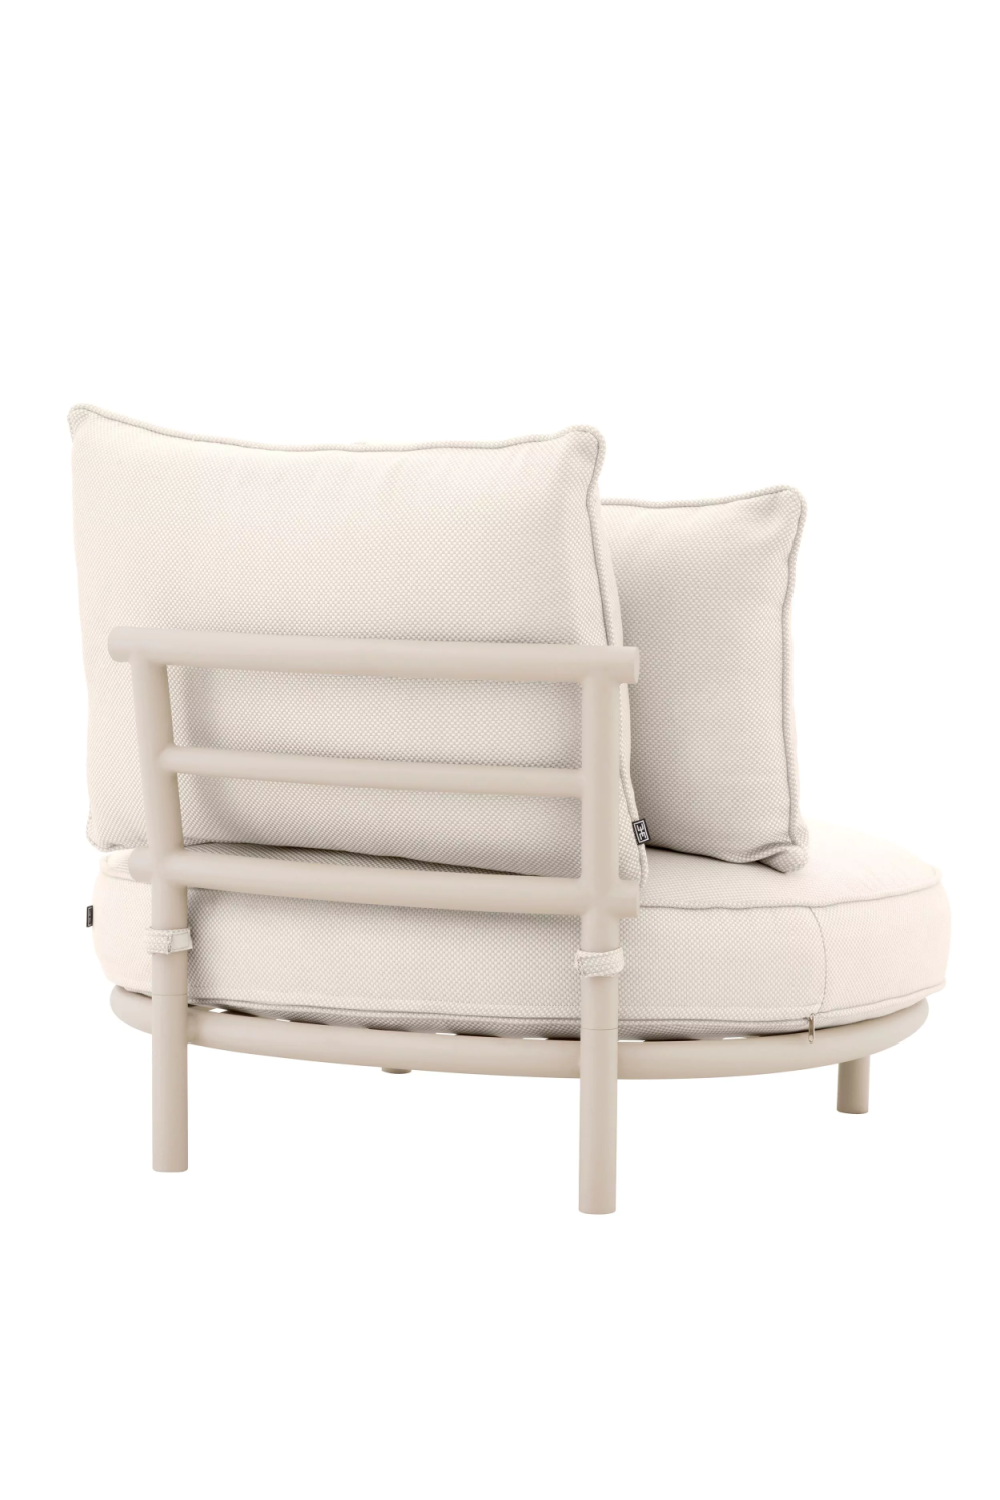 White Round Outdoor Chair | Eichholtz Laguno | Oroa.com